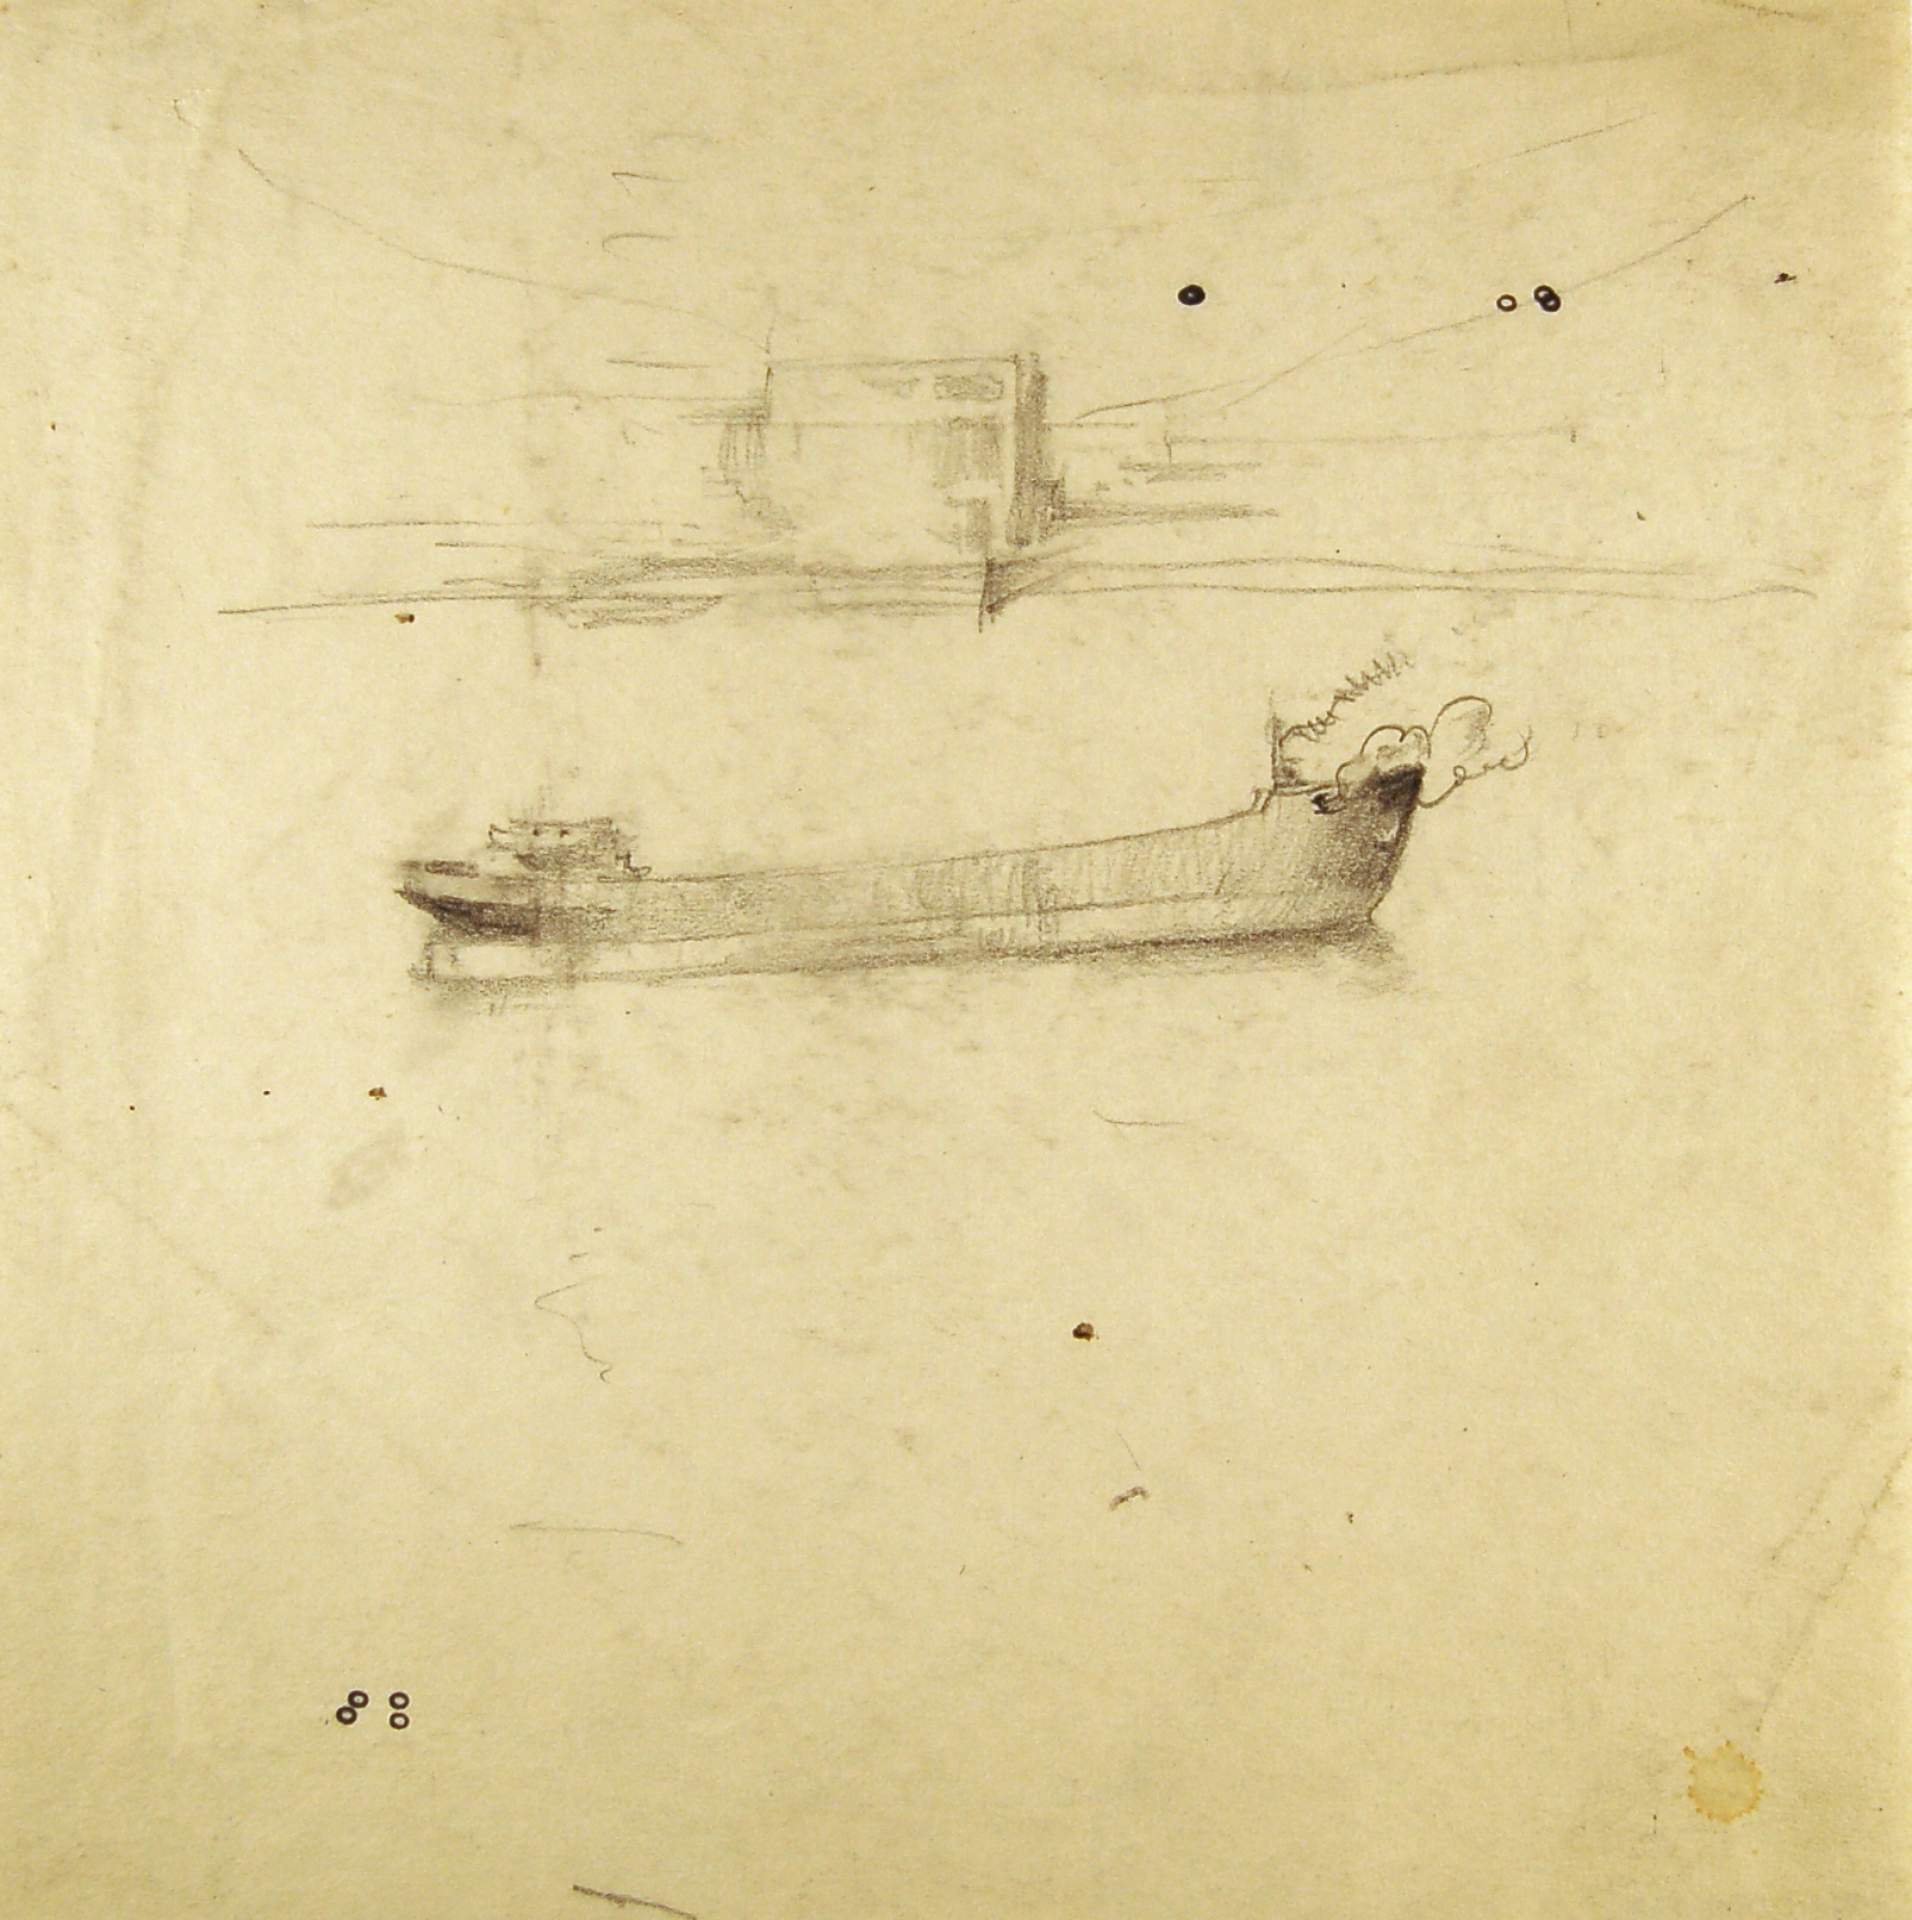 Sketch of Tanker Ship